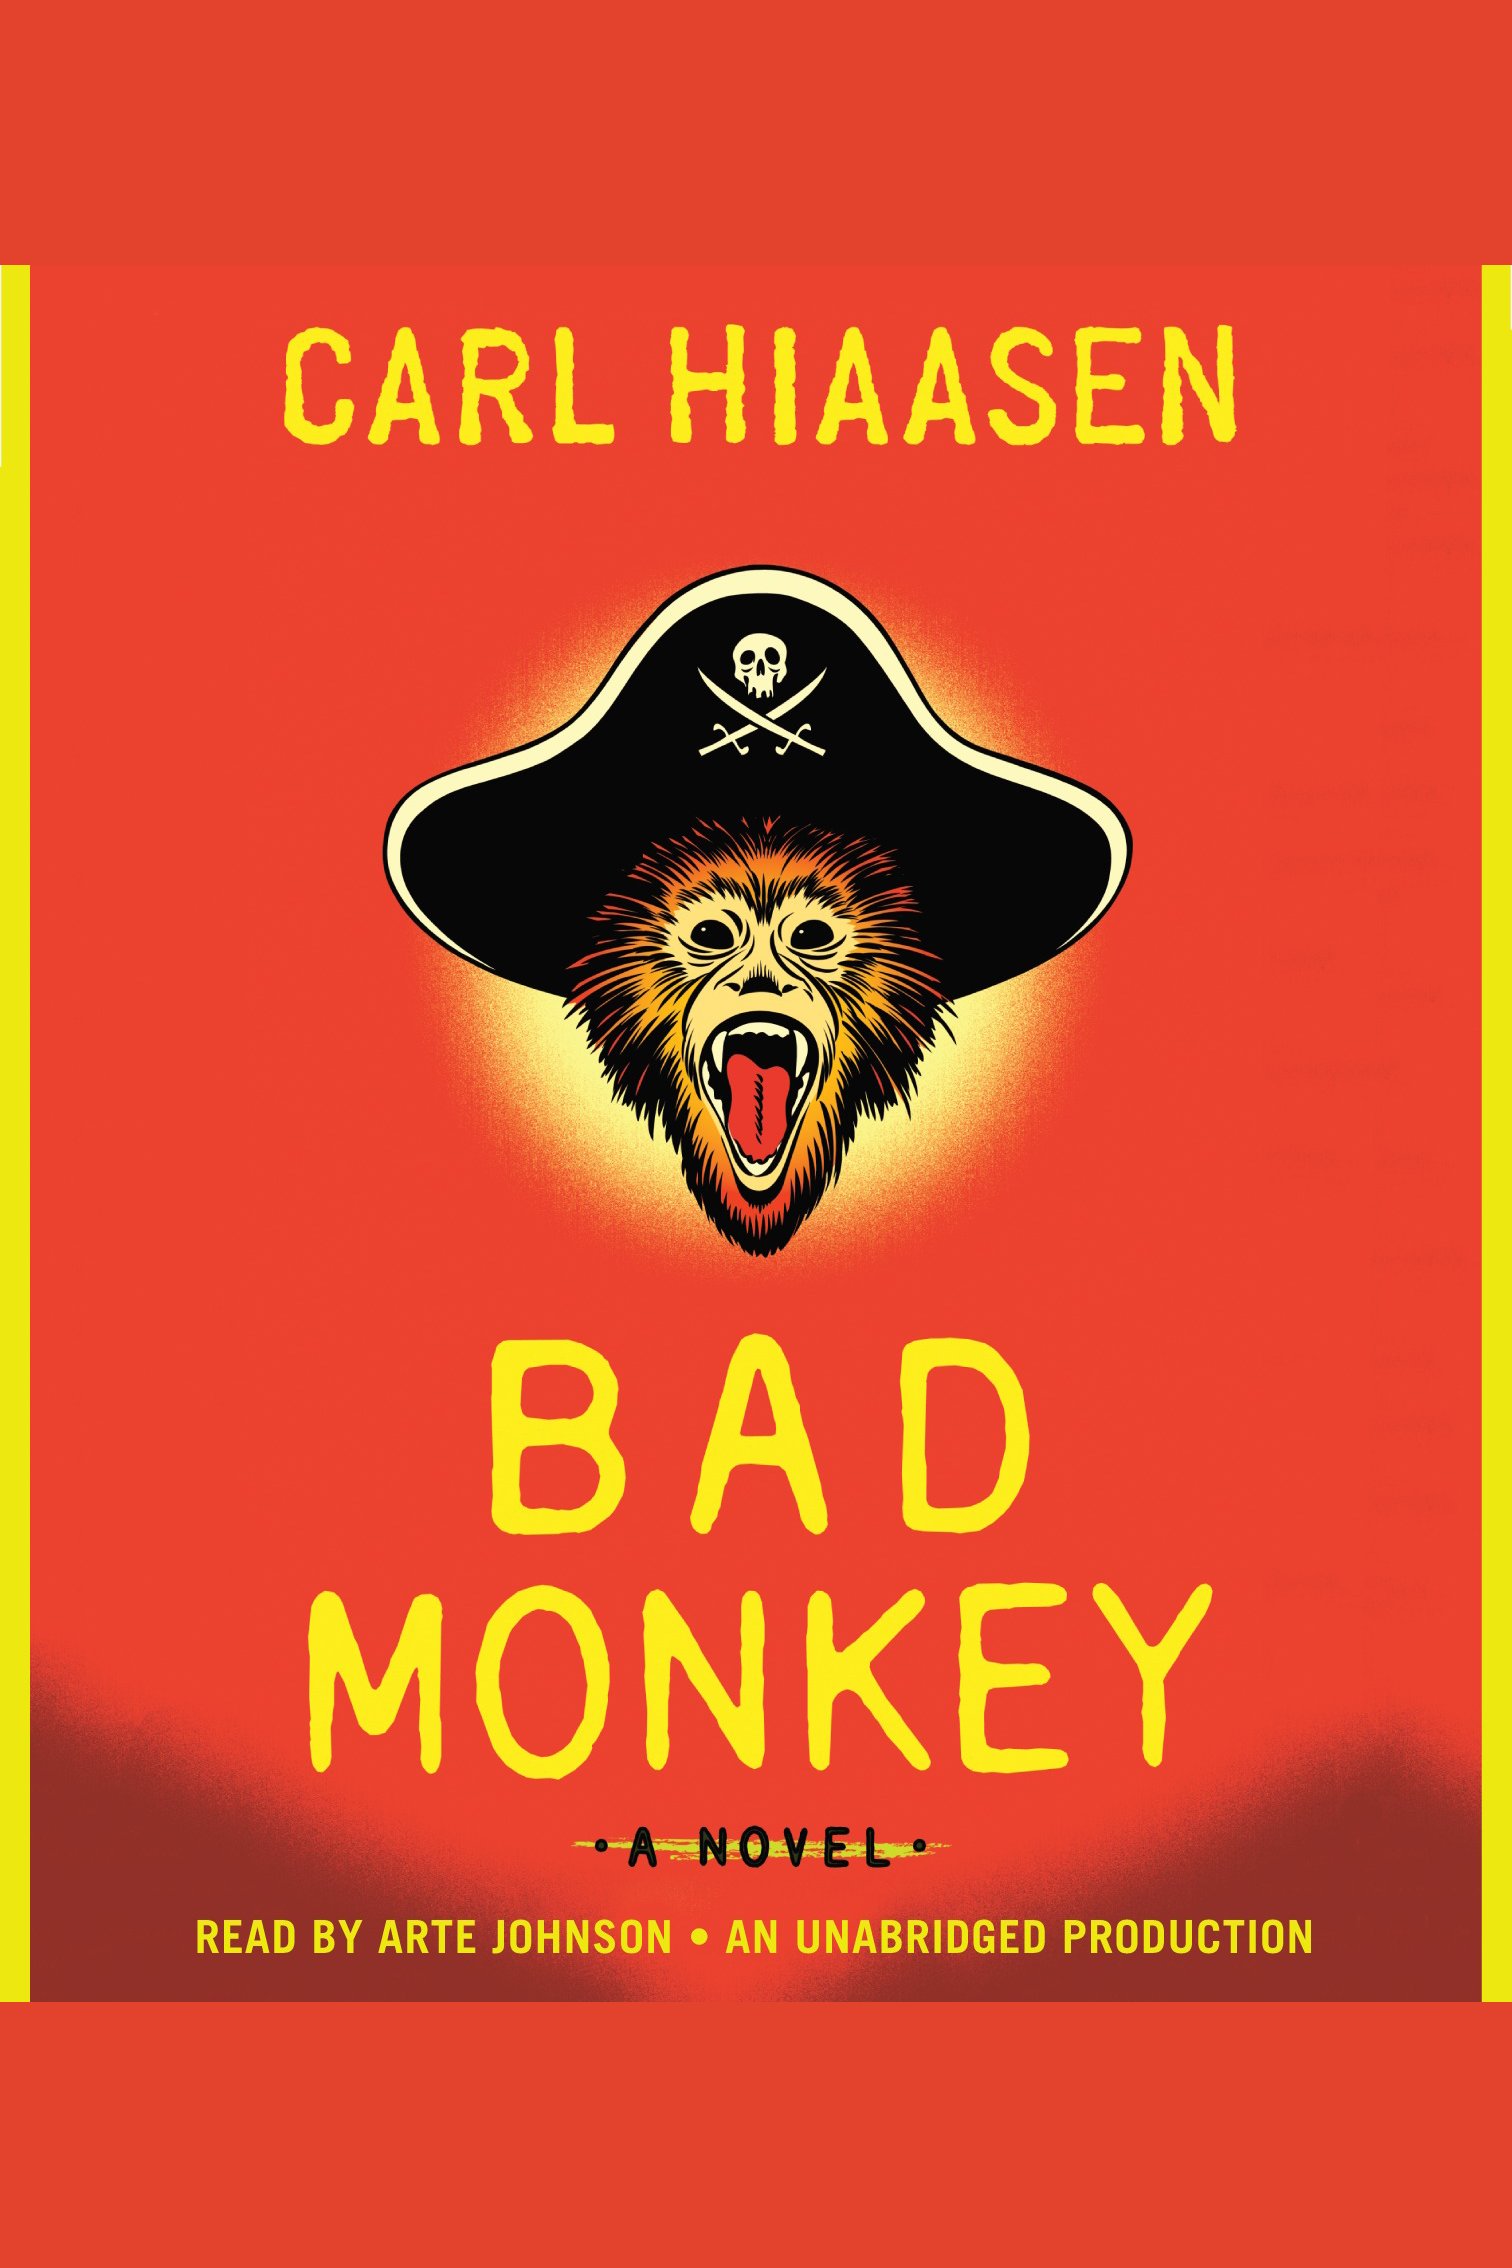 Bad monkey cover image